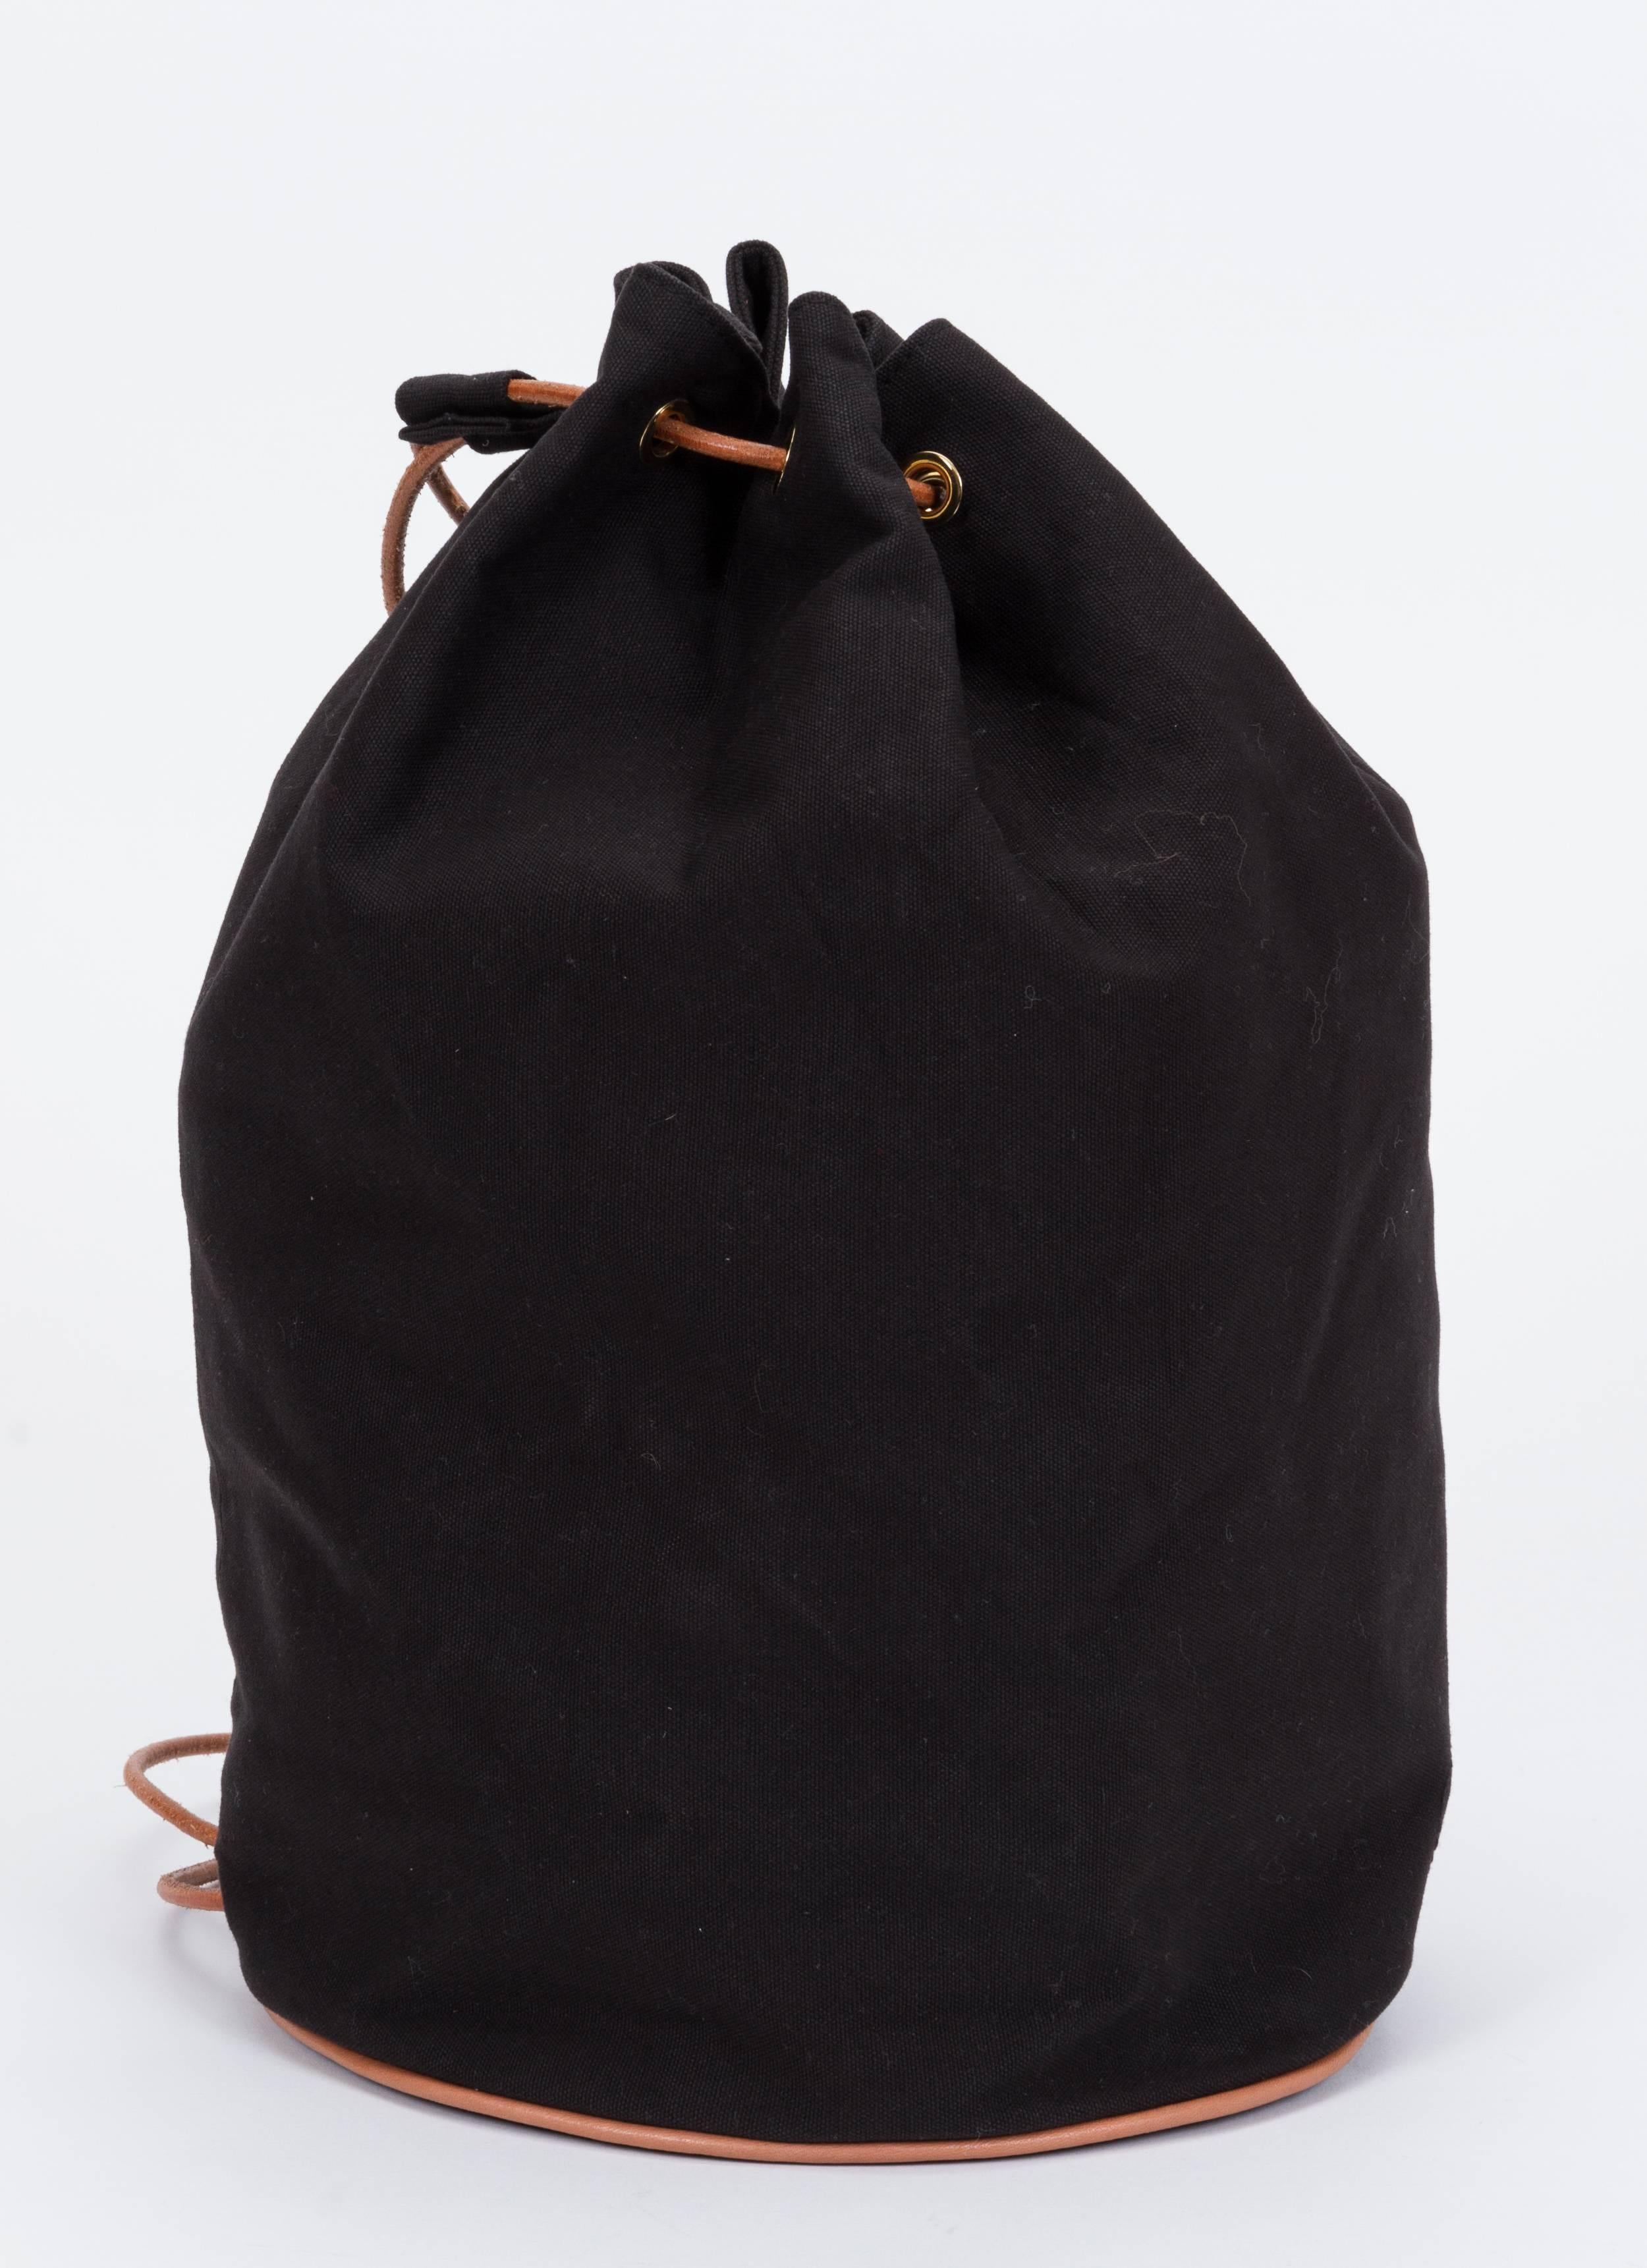 Hermes black toile backpack with cuir leather details . Shoulder drop 11